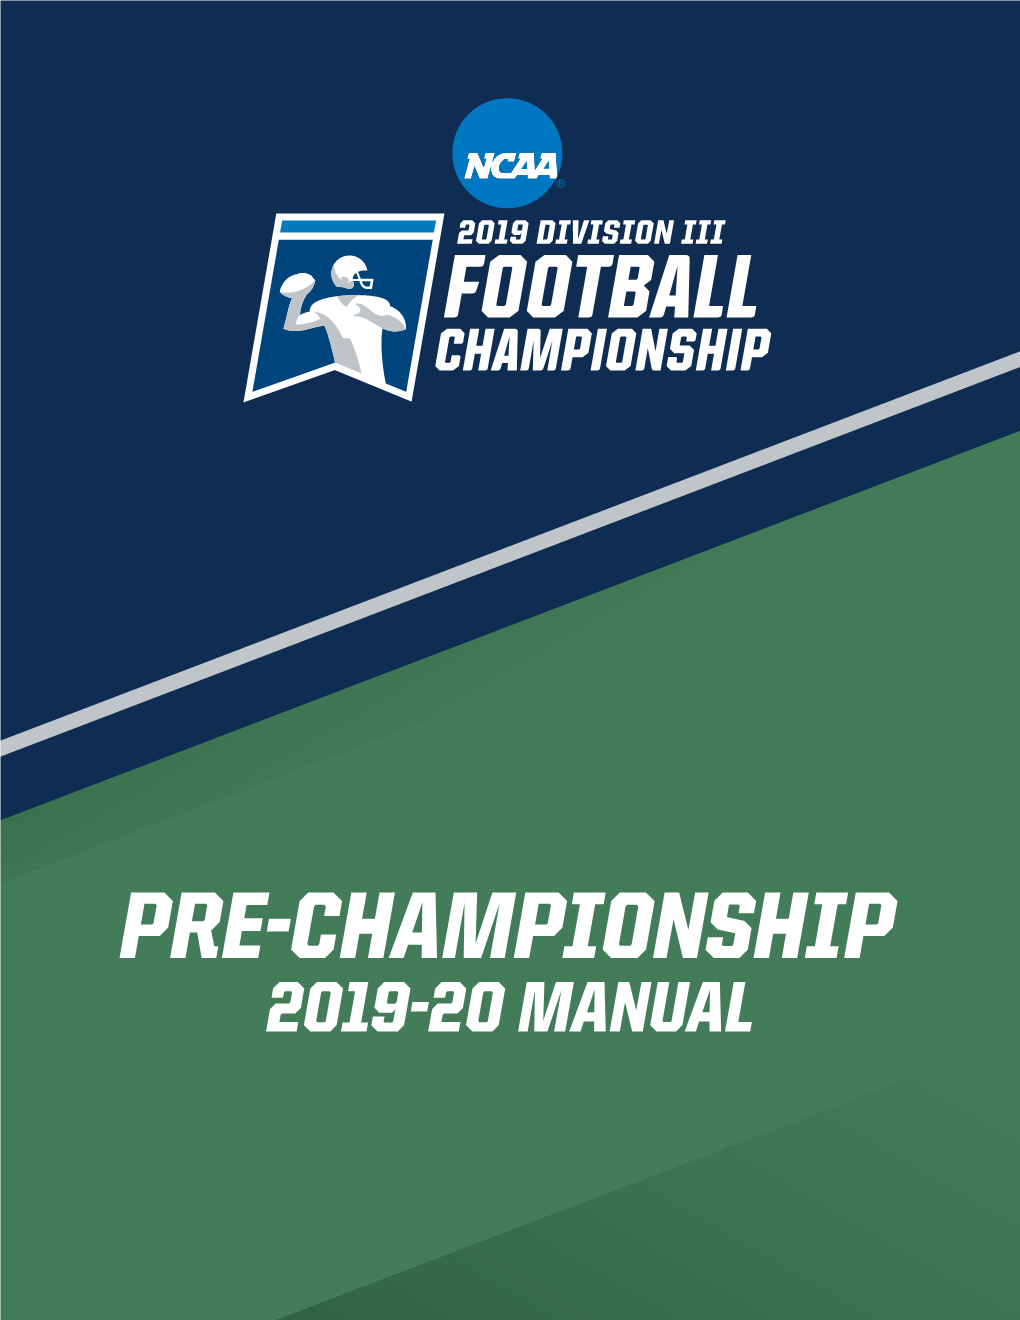 2019-20 Pre-Championship Manual